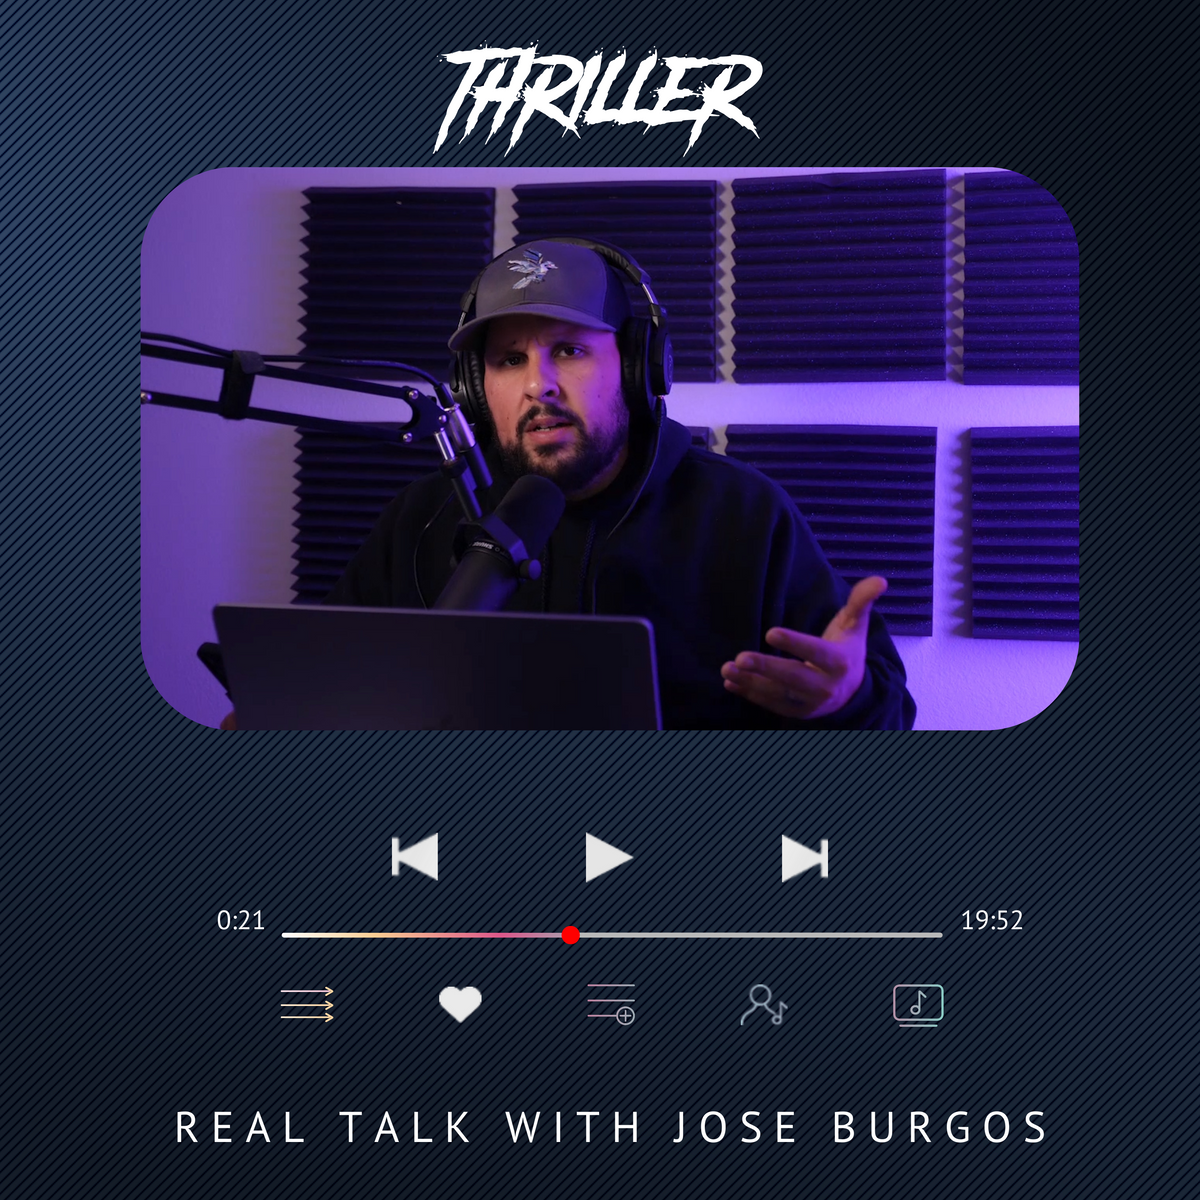 💿 Real talk with Jose Burgos